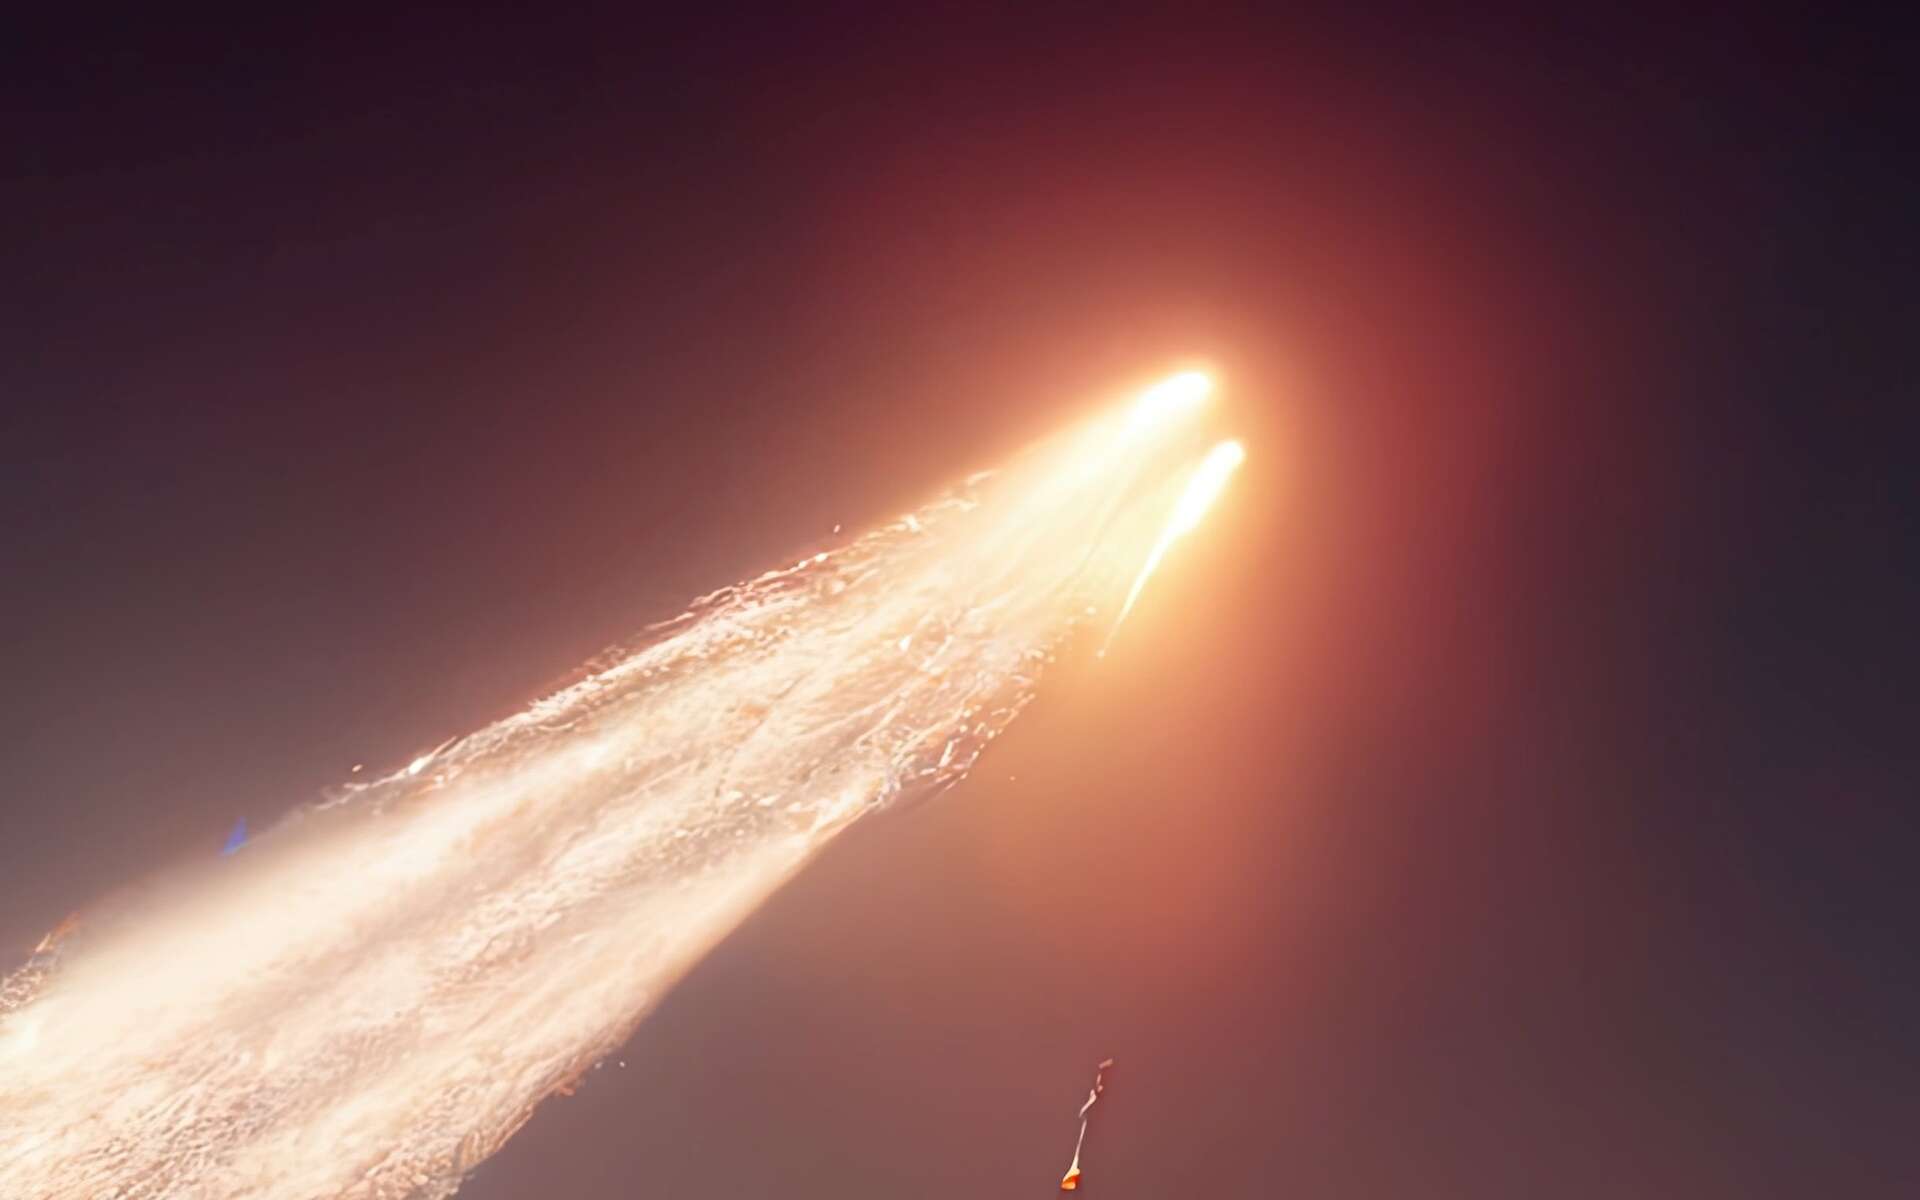 La Faucon millenium photographié dans l'espace ? Non, une comète géante qui a explosé !